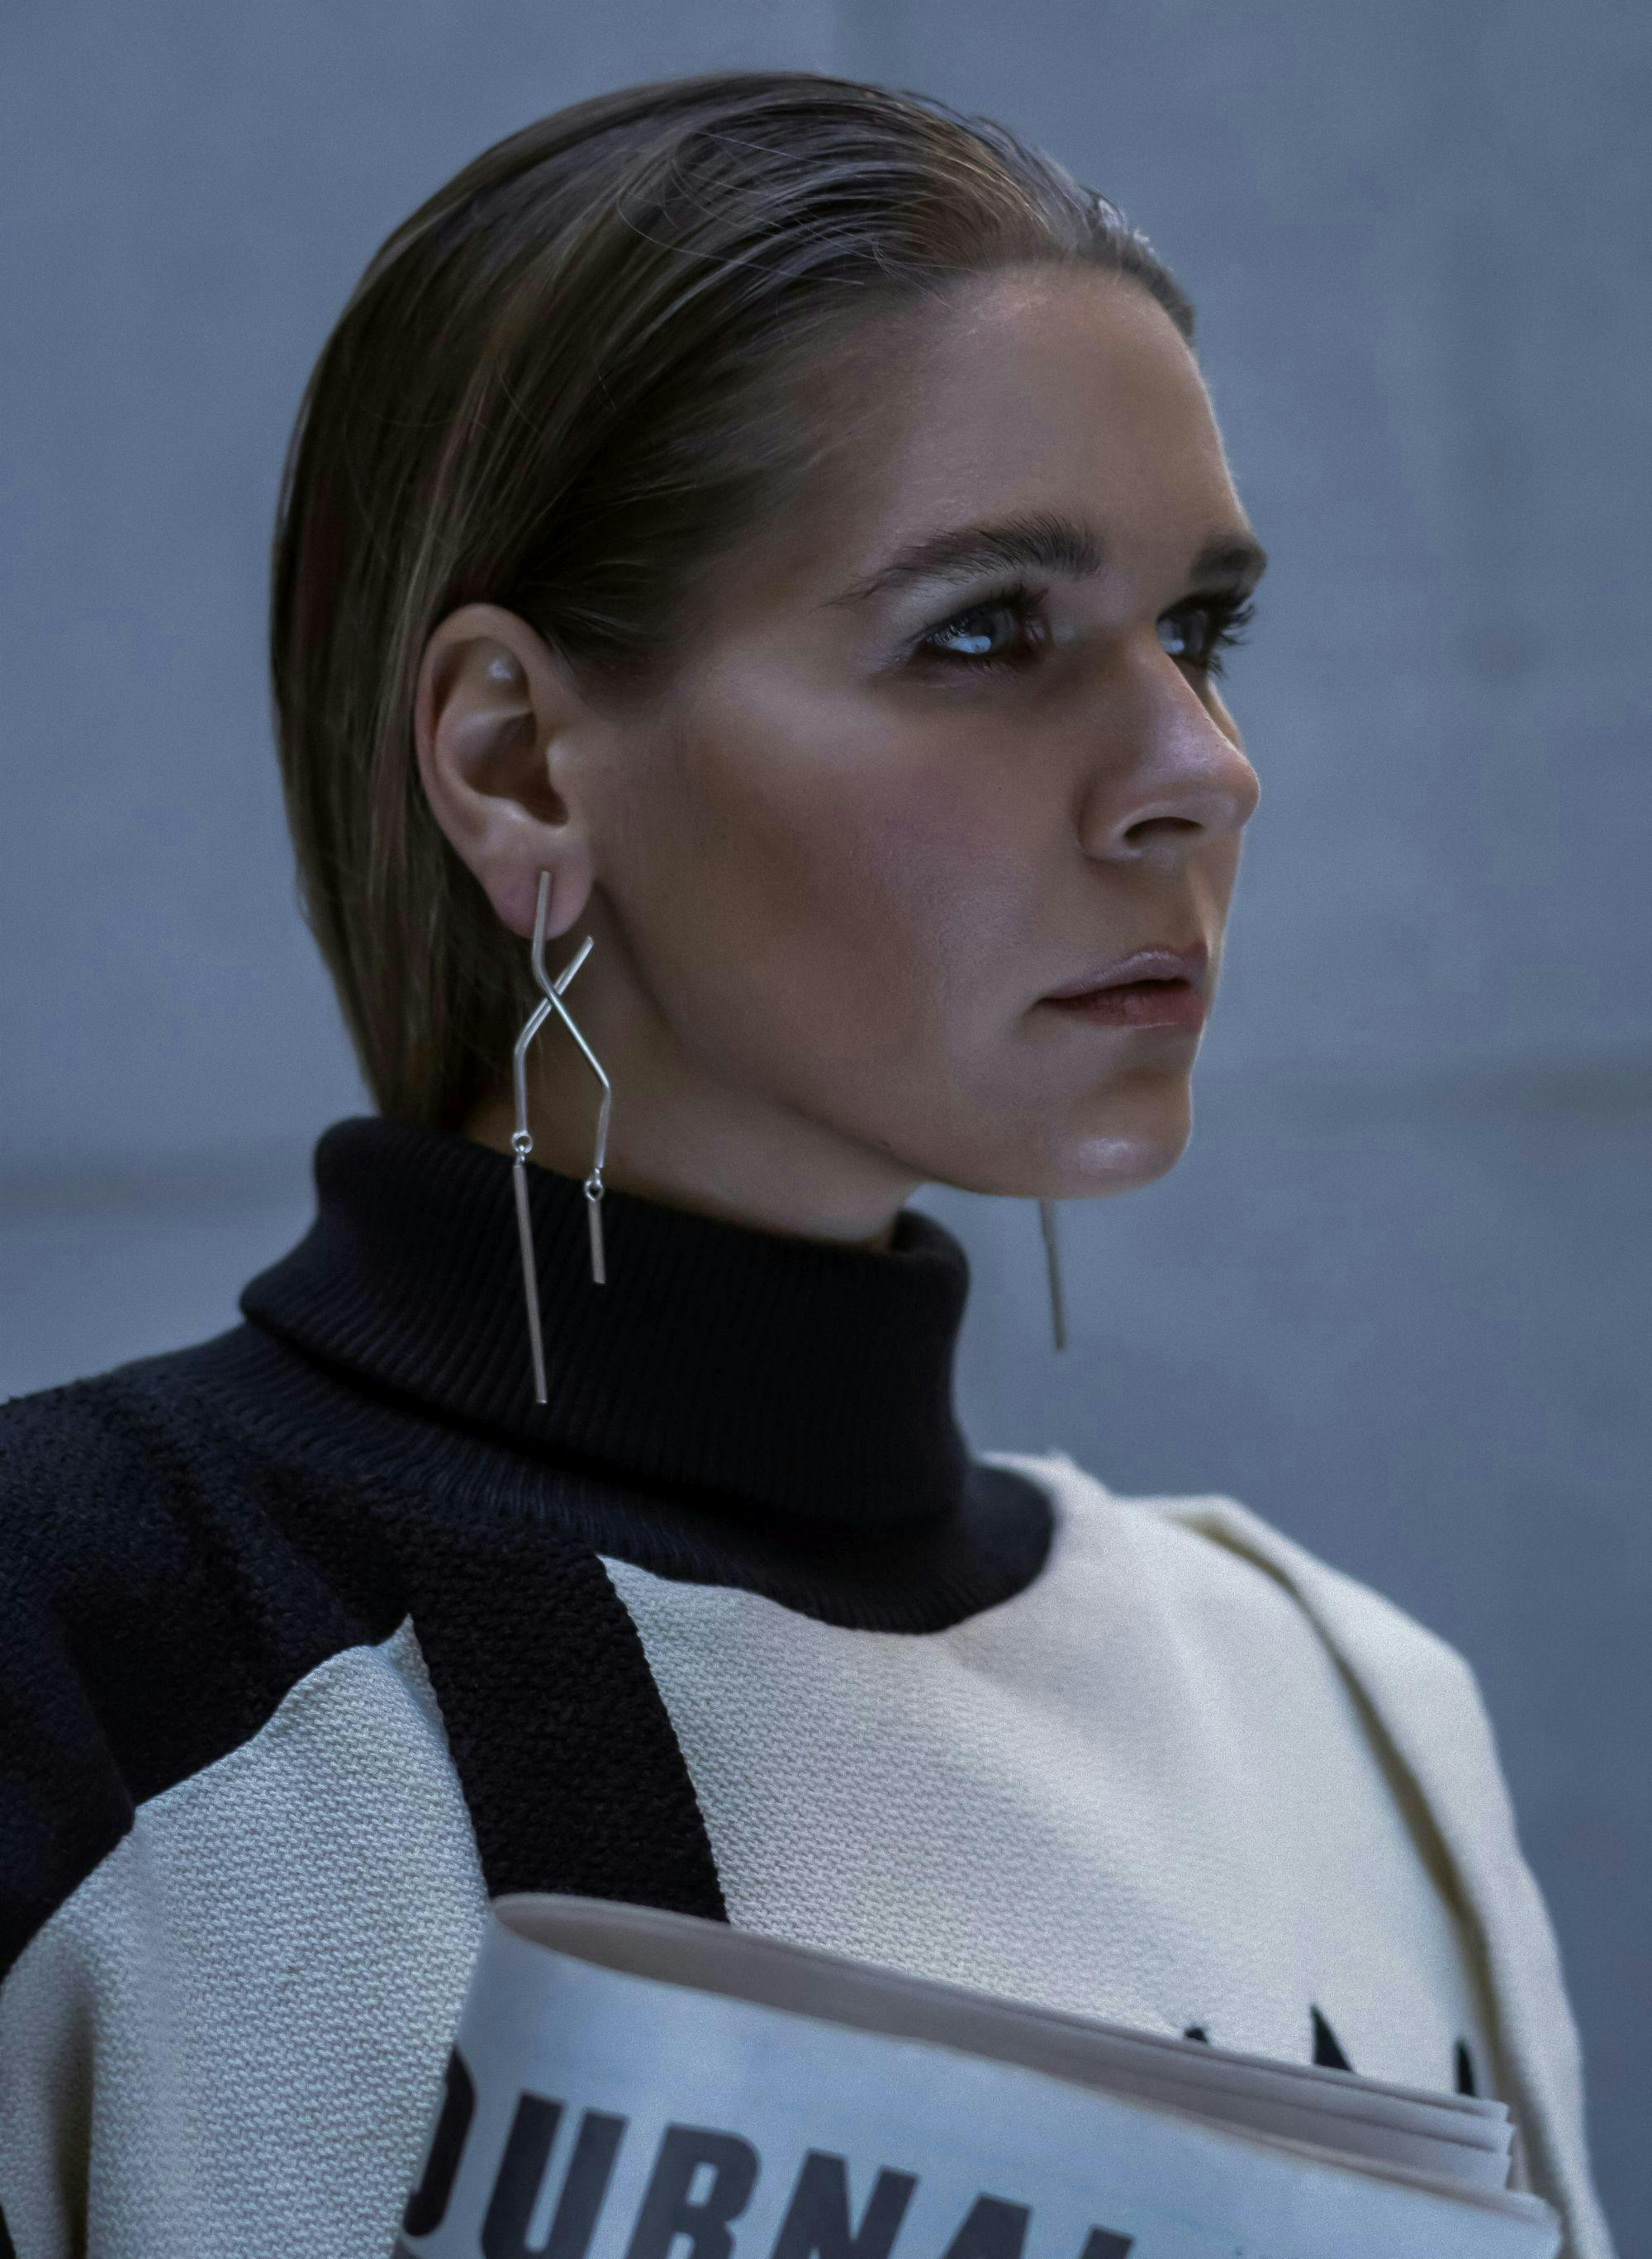 earring accessories sweater knitwear person woman adult female portrait long sleeve